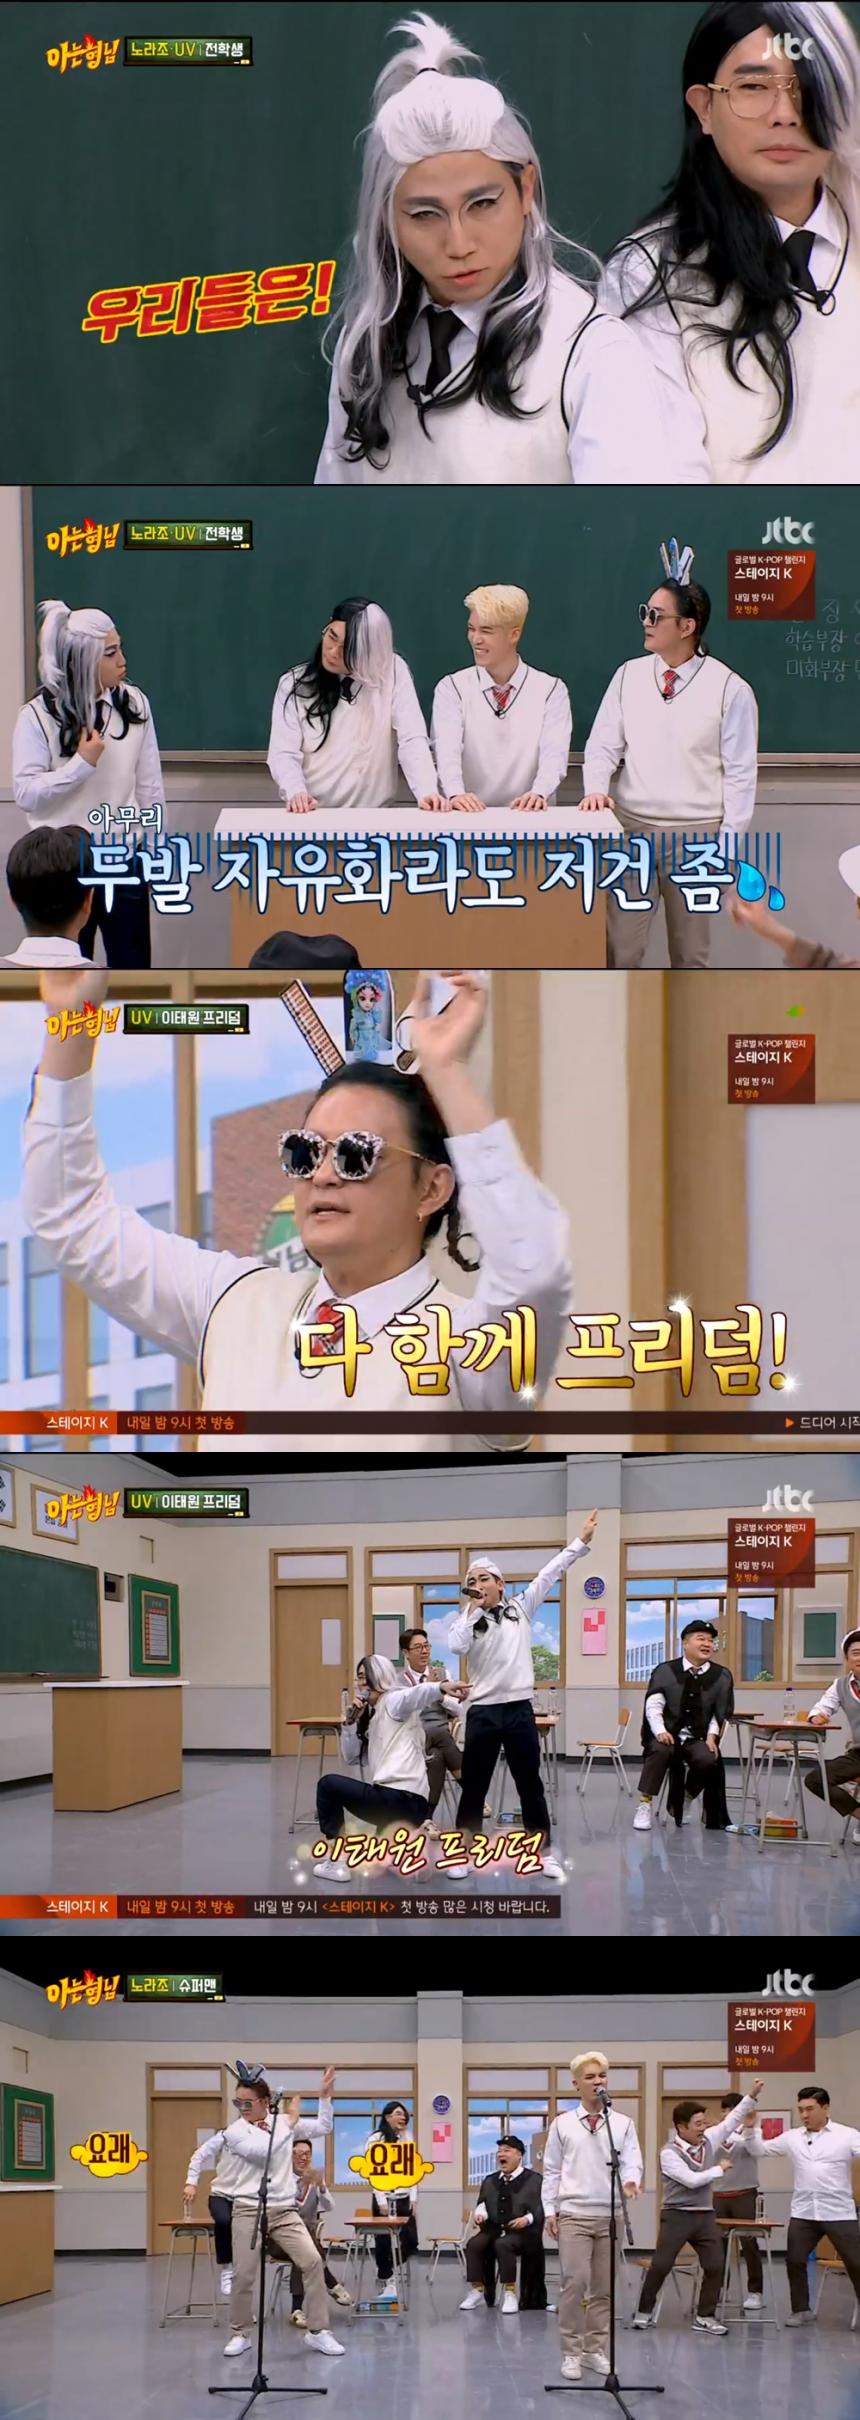 JTBC '아는형님' 방송 캡쳐